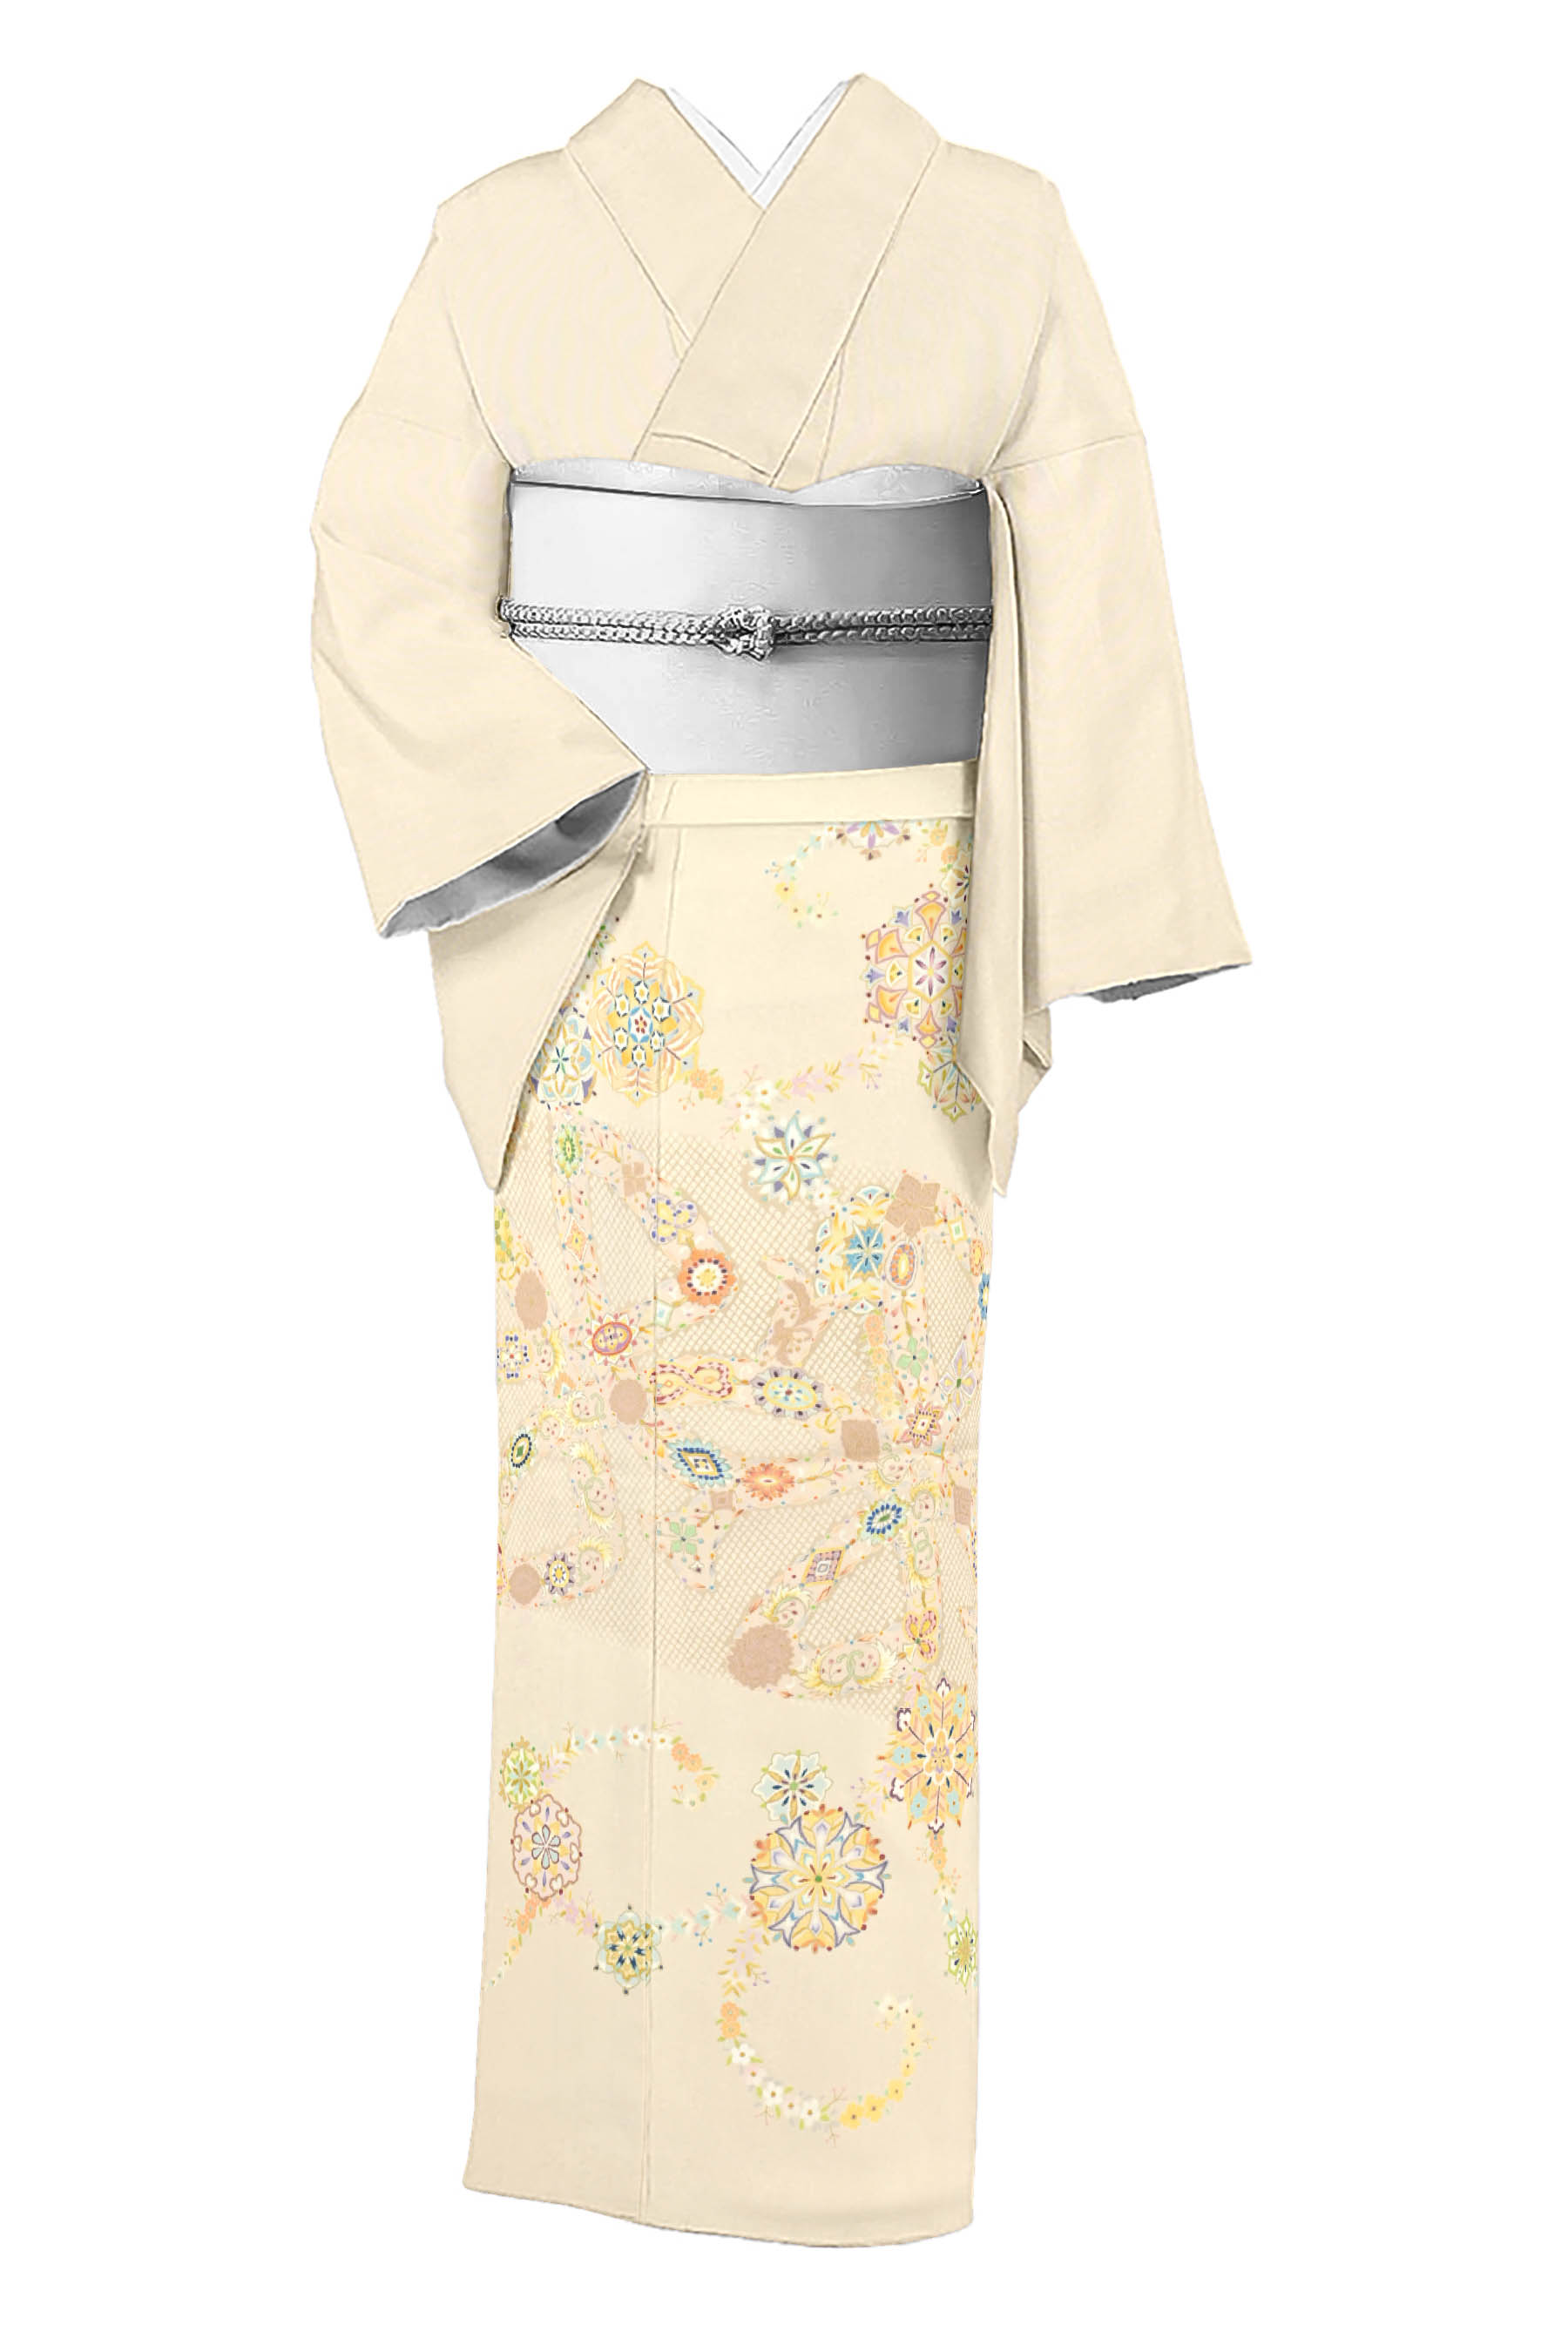 【染の北川】 最高級本手描き東京友禅色留袖 和木沢絹使用 「麗華連奏文様」 渾身の一点もの。 真糊本糸目の秀逸品。